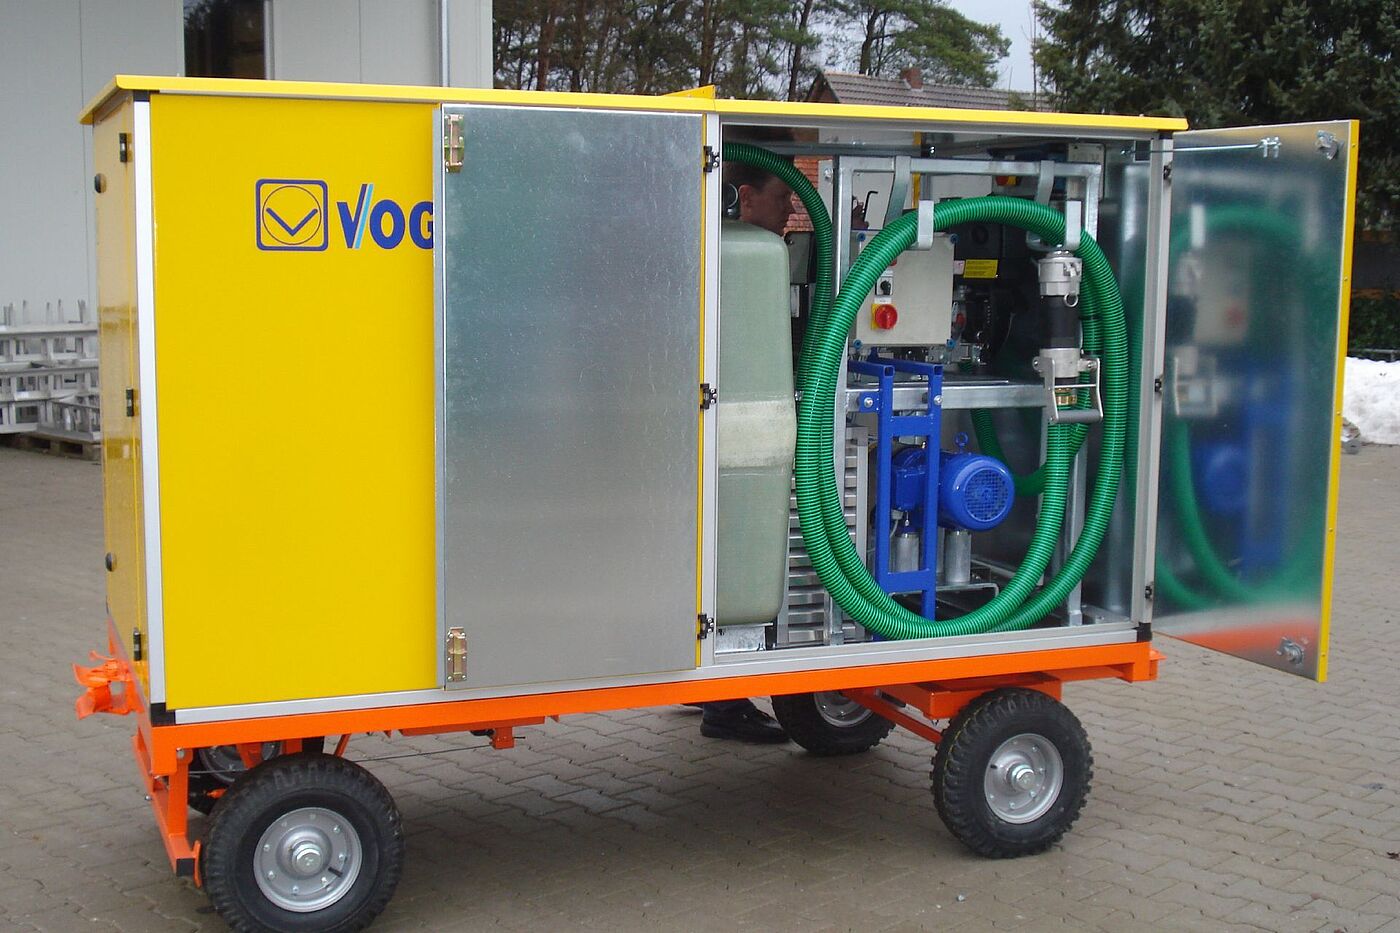 Przenośne rozwiązania w zakresie dostarczania wody i odprowadzania ścieków pod postacią urządzenia MobileUnit firmy Vogelsang